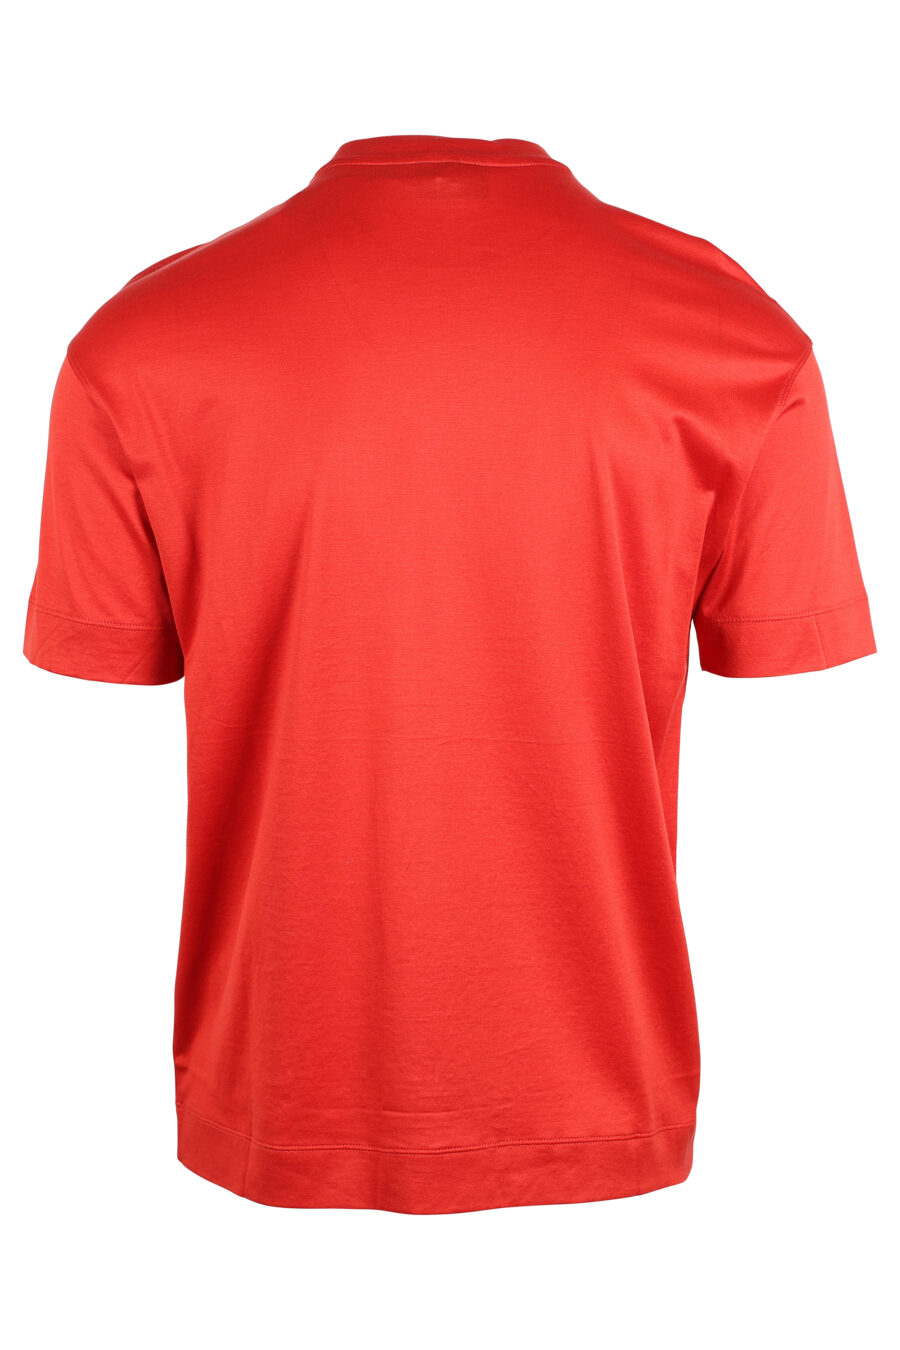 T-shirt rouge avec maxilogo monochrome - IMG 4746